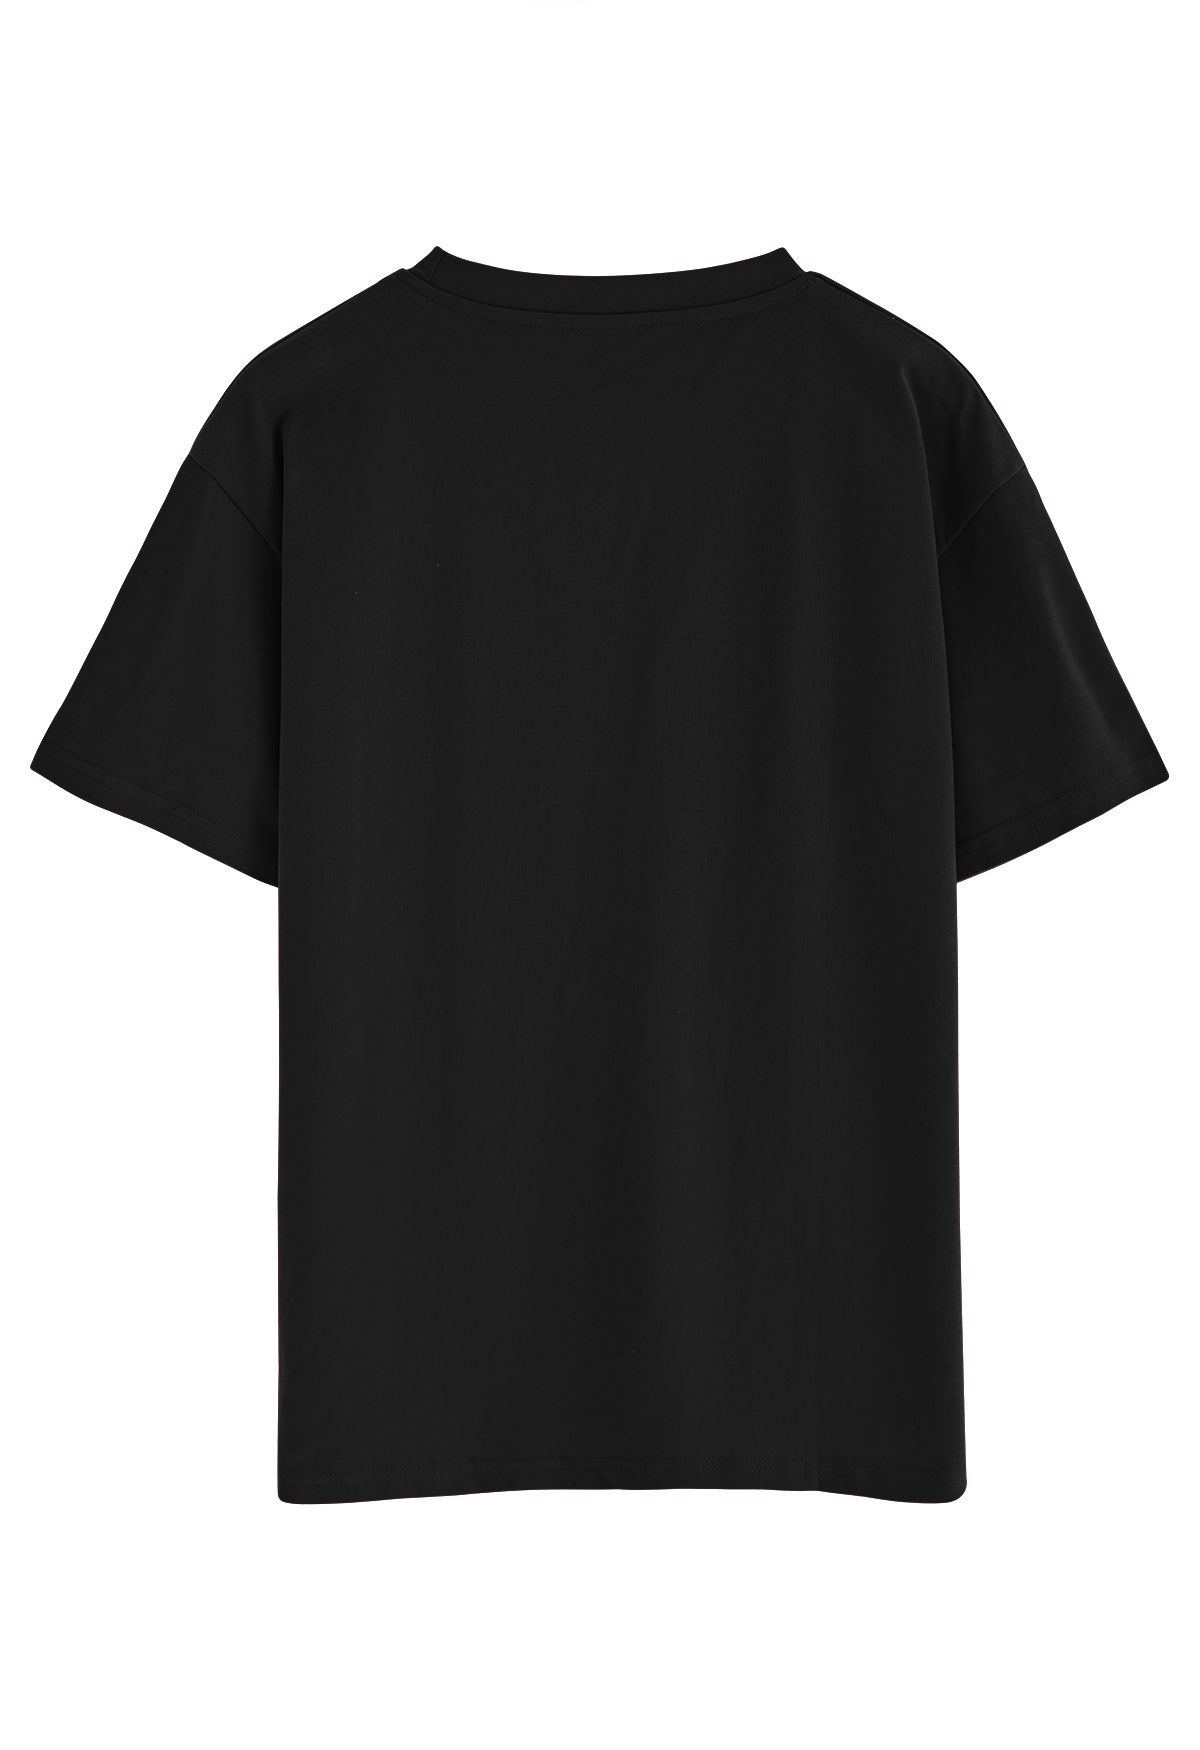 T-shirt col rond imprimé Paris en noir